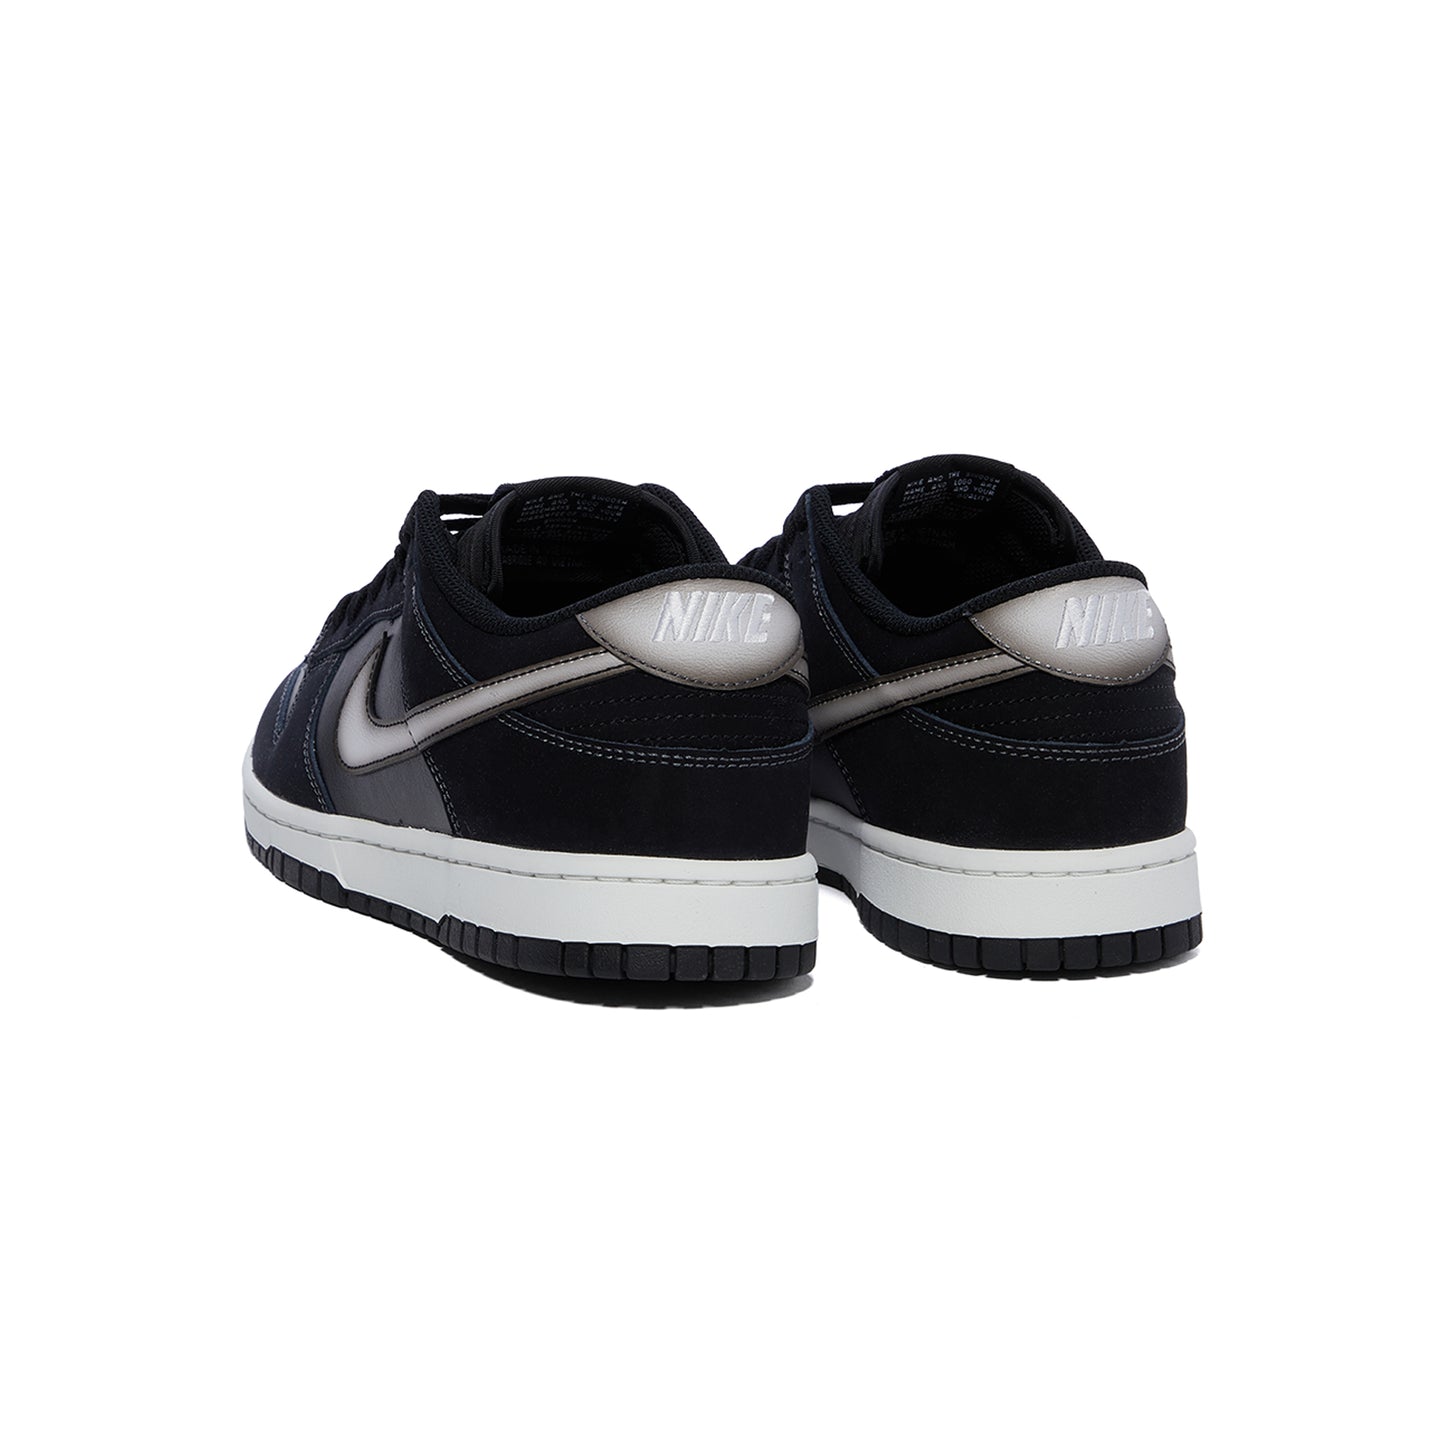 Nike Dunk Low Retro (Black/White/Anthracite)